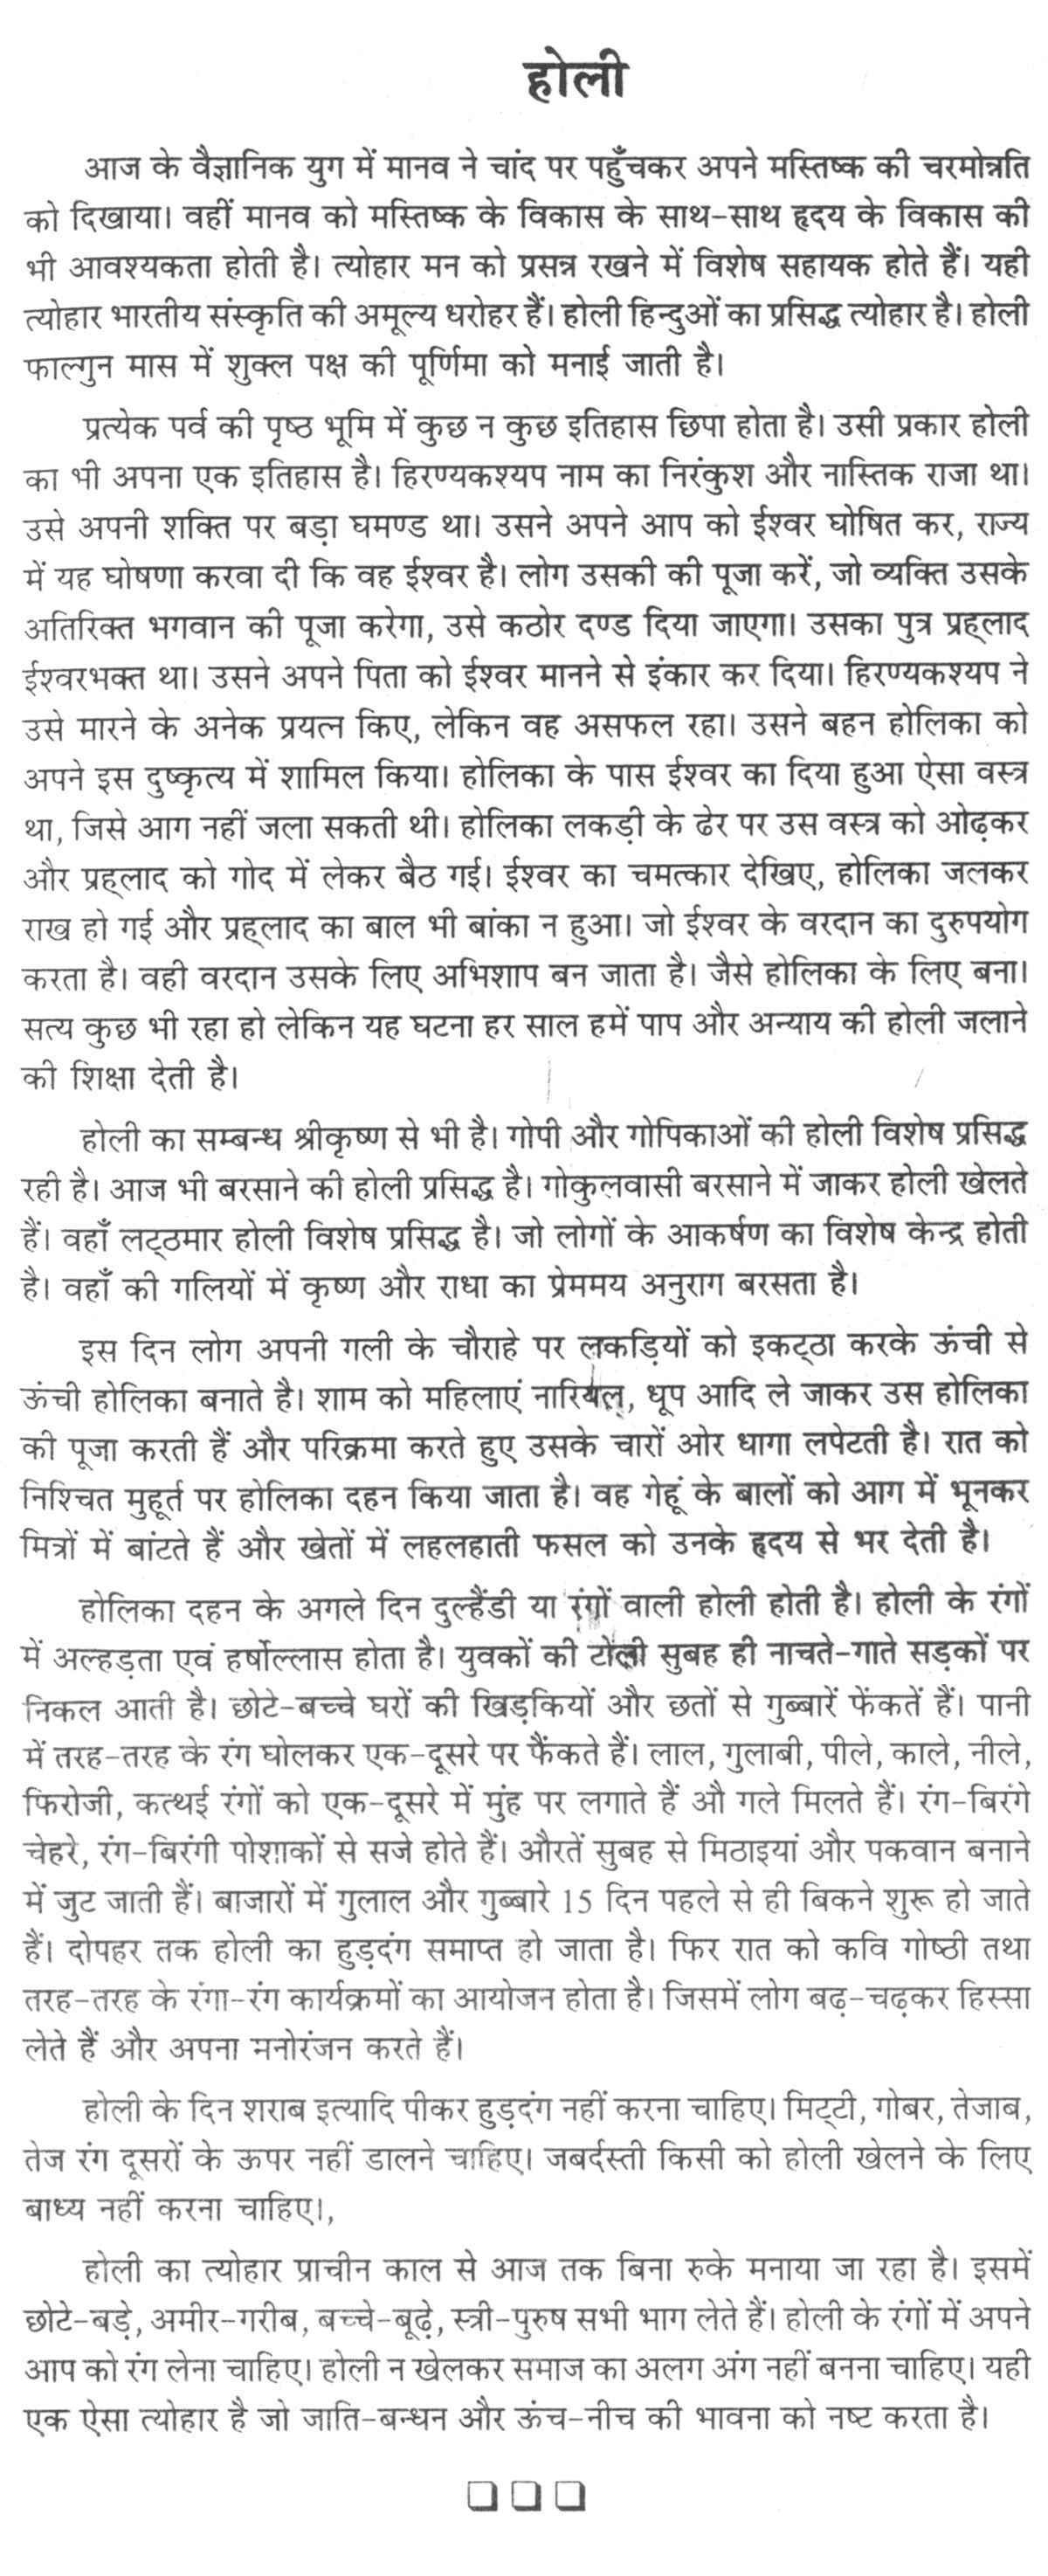 Essays in sanskrit on diwali